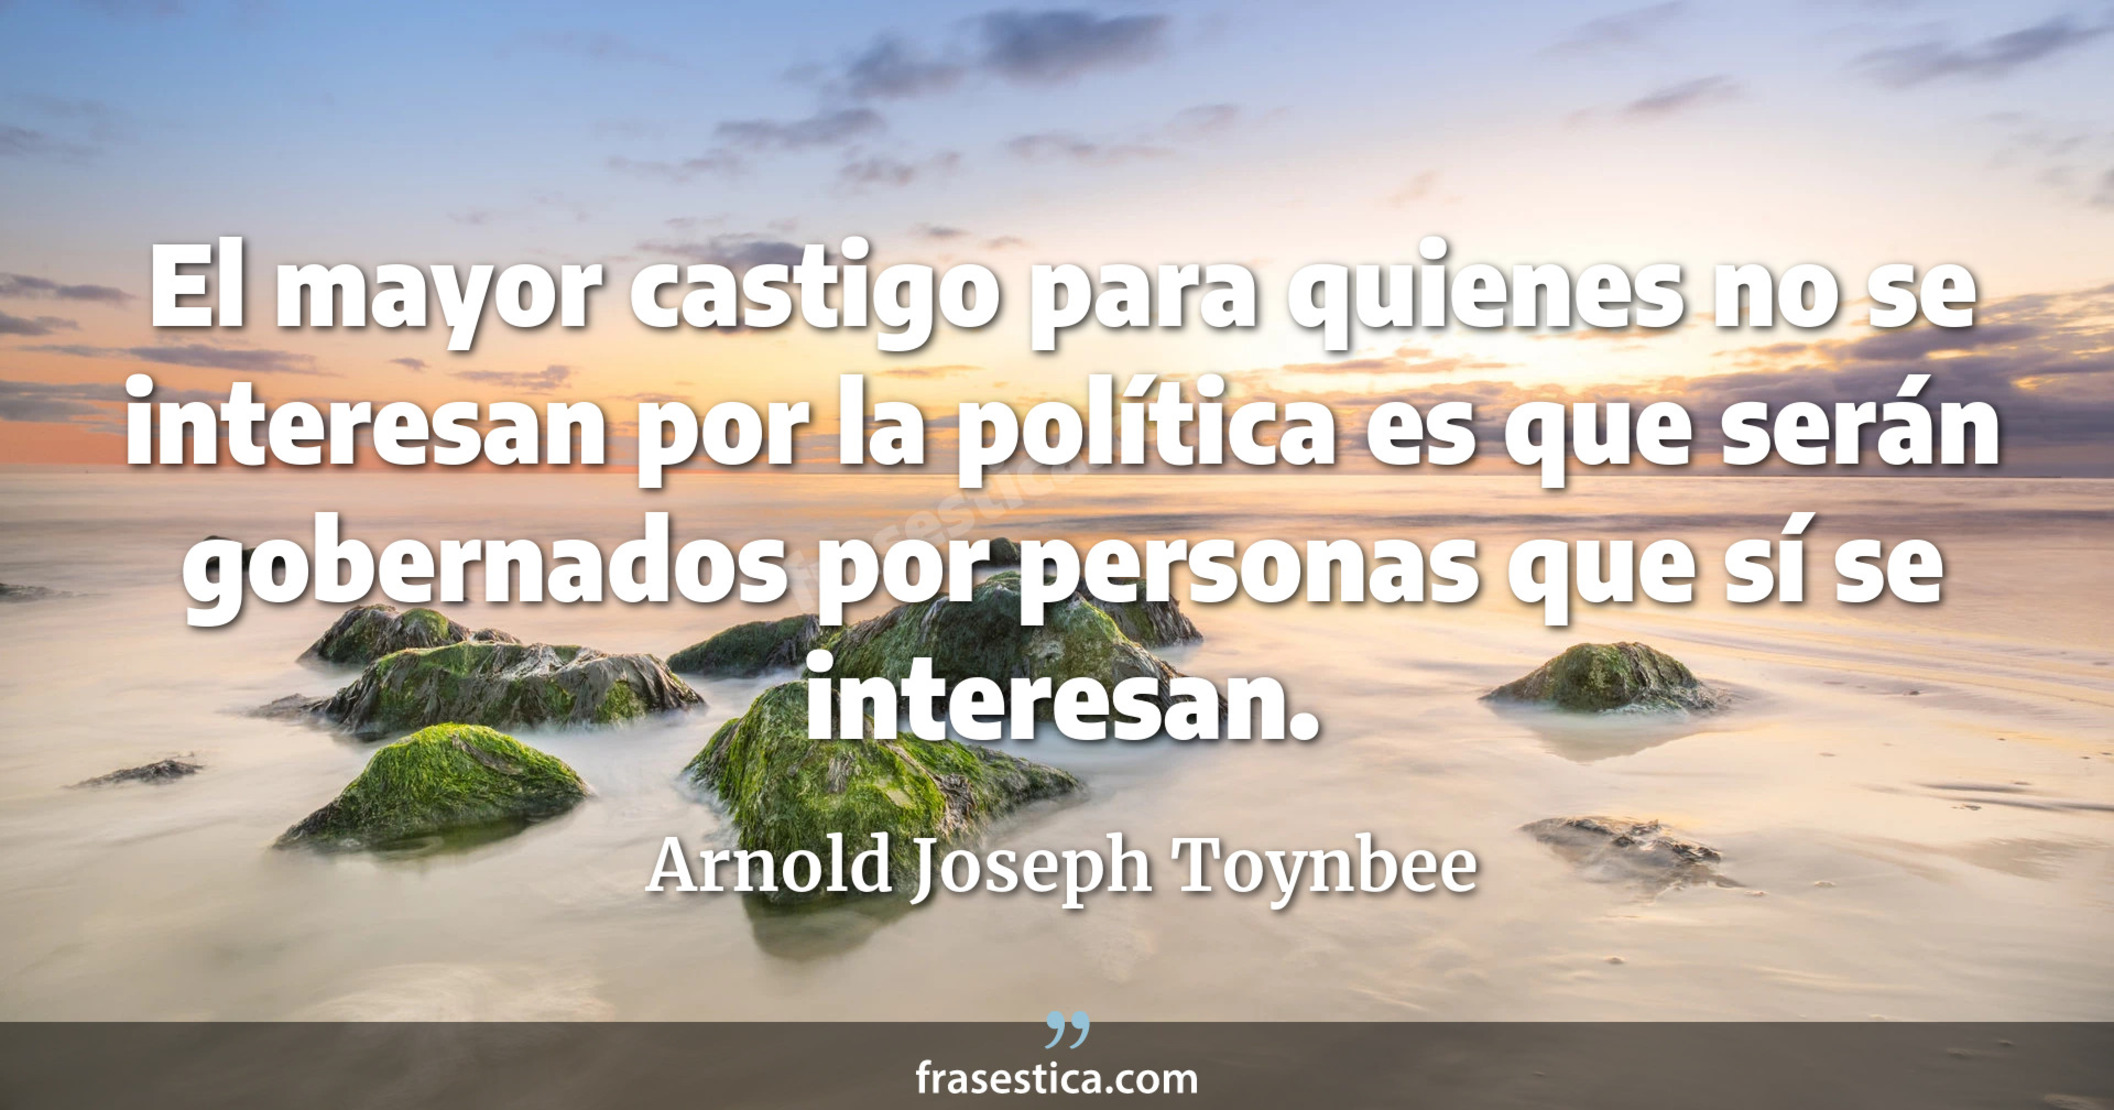 El mayor castigo para quienes no se interesan por la política es que serán gobernados por personas que sí se interesan. - Arnold Joseph Toynbee